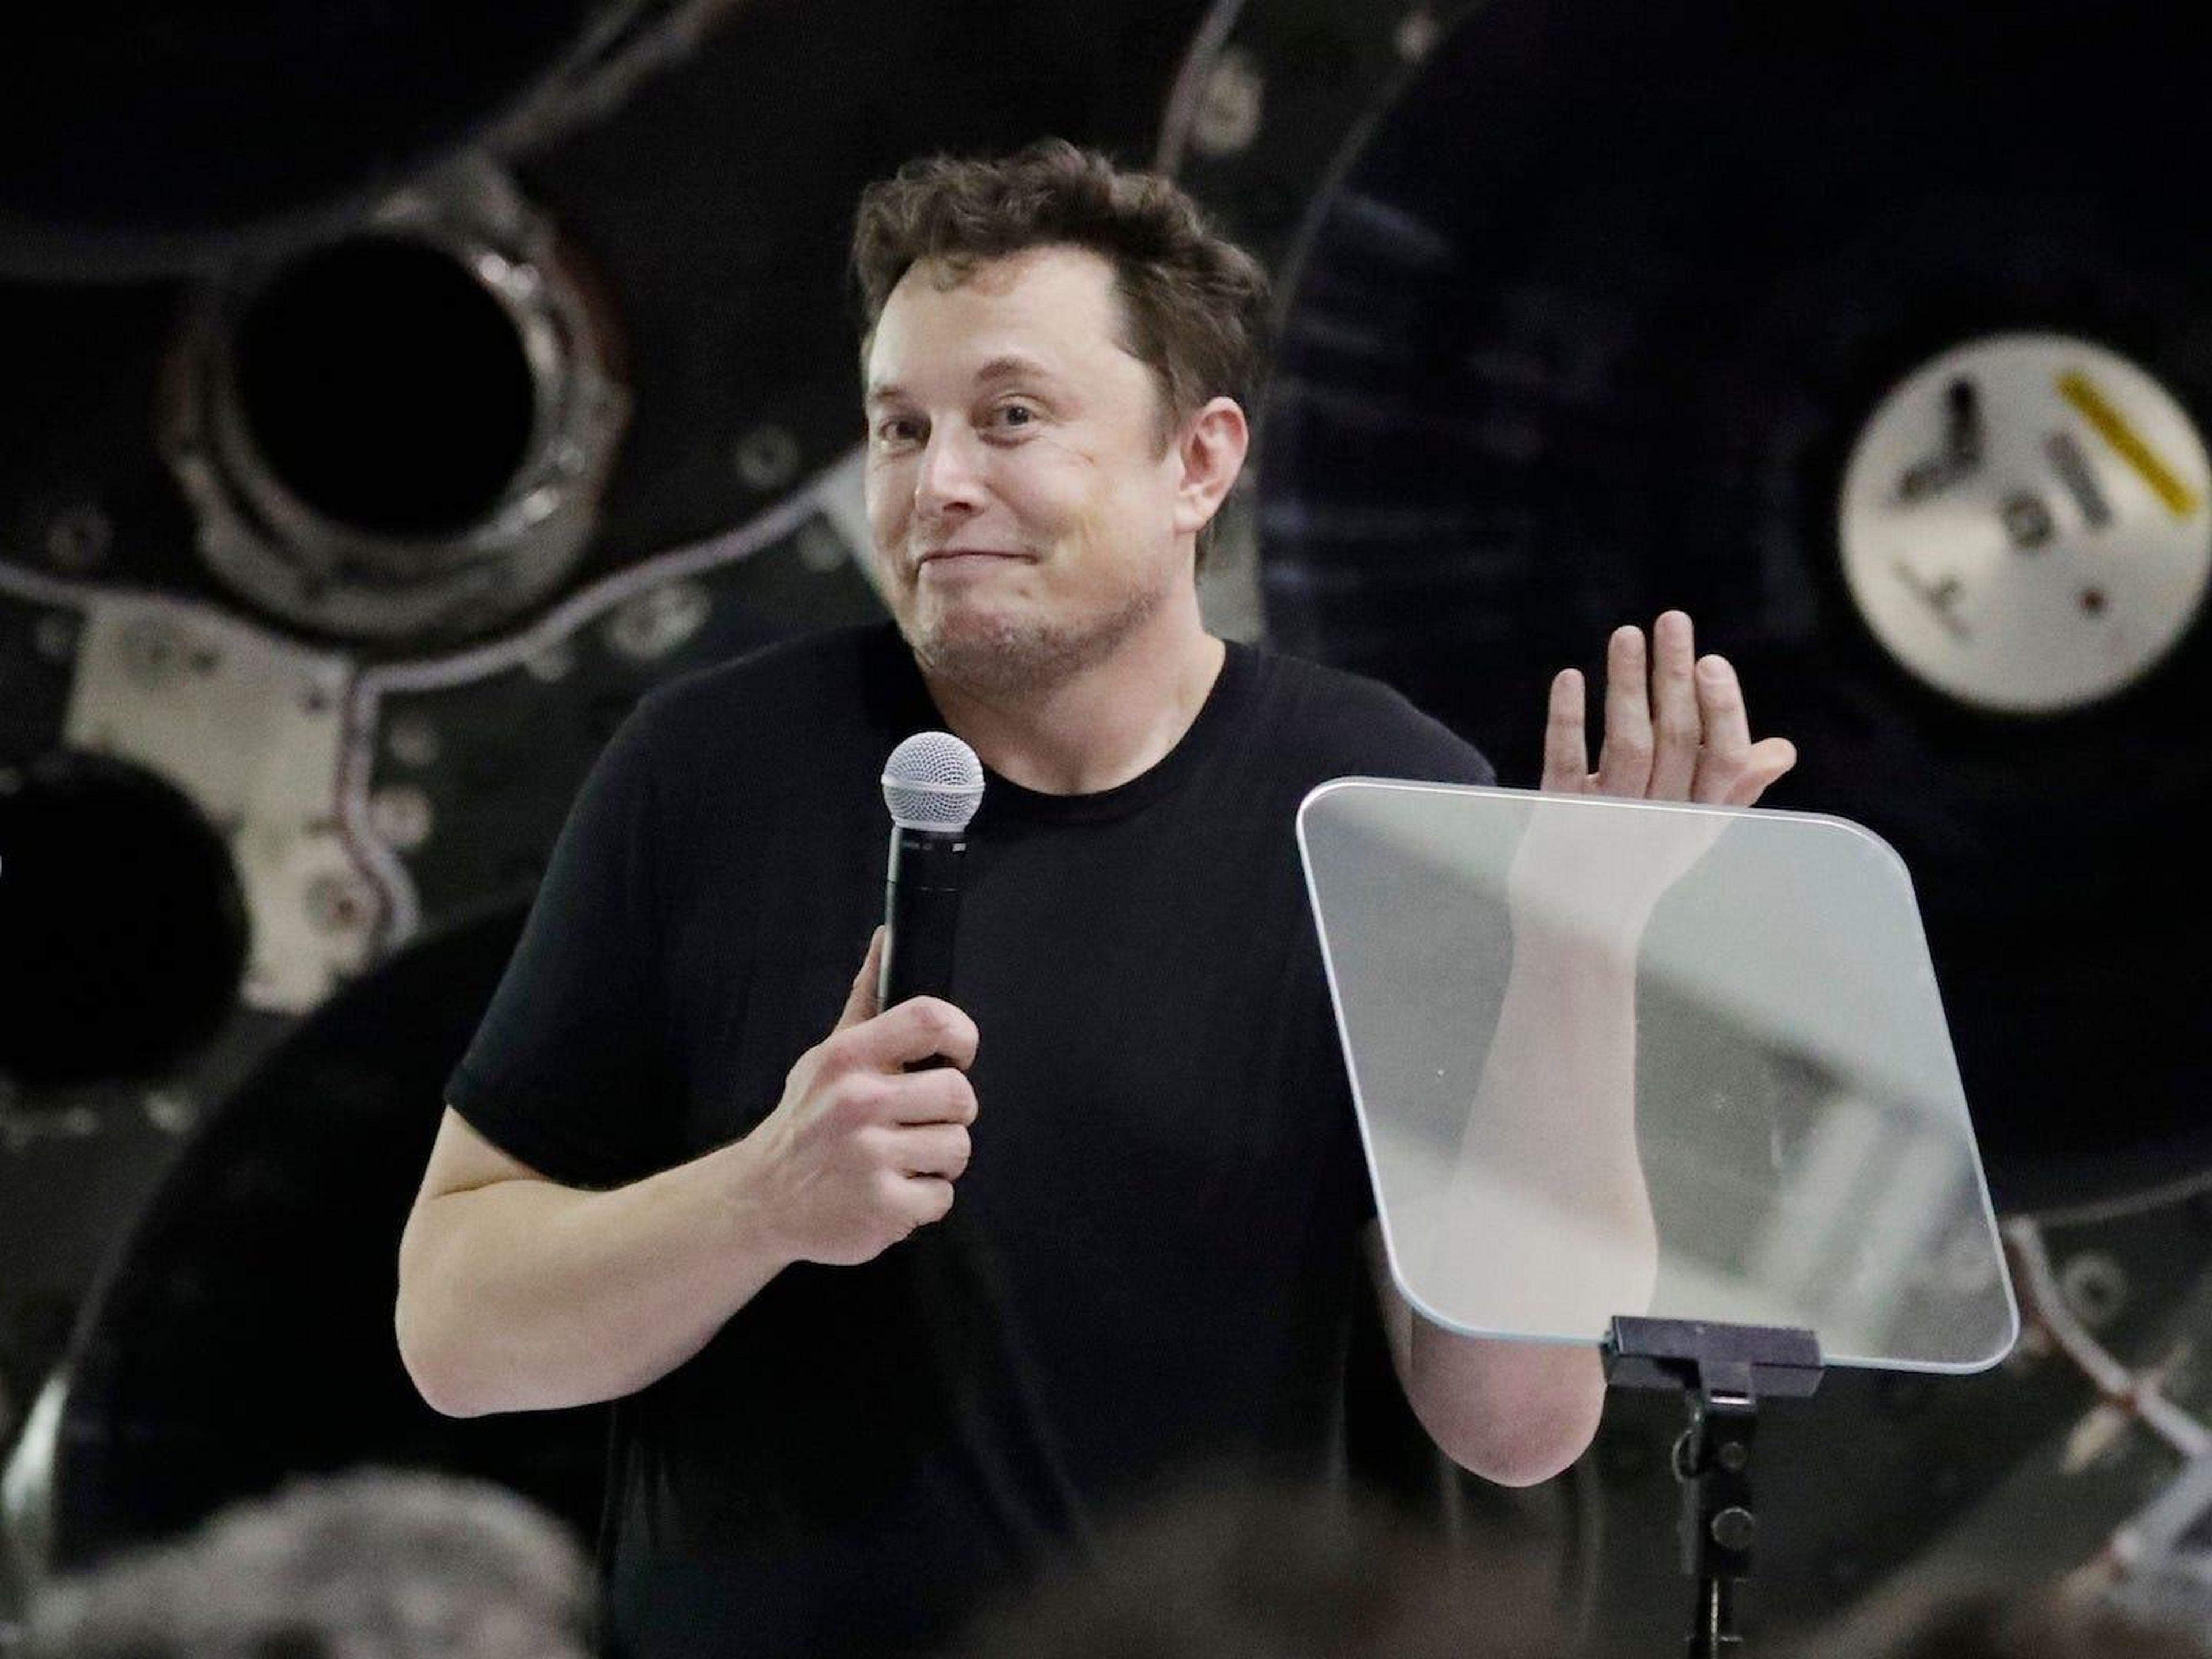 El fundador y director ejecutivo de SpaceX, Elon Musk, habla después de anunciar al multimillonario japonés Yusaku Maezawa como el primer pasajero privado en un viaje alrededor de la luna, el lunes 17 de septiembre de 2018.